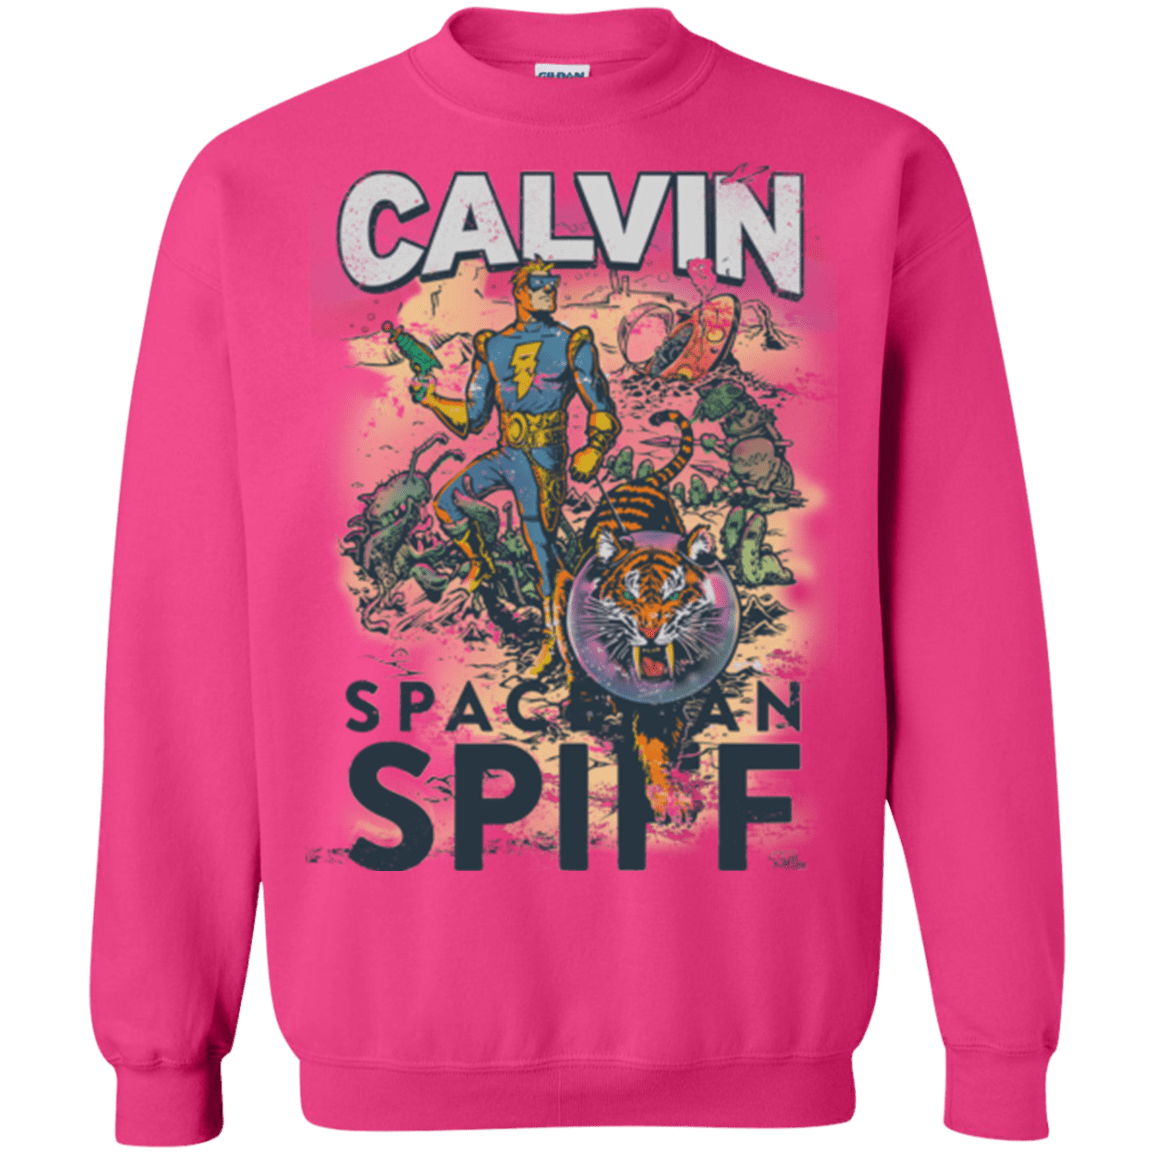 Sweatshirts Heliconia / Small Spaceman Spiff Crewneck Sweatshirt